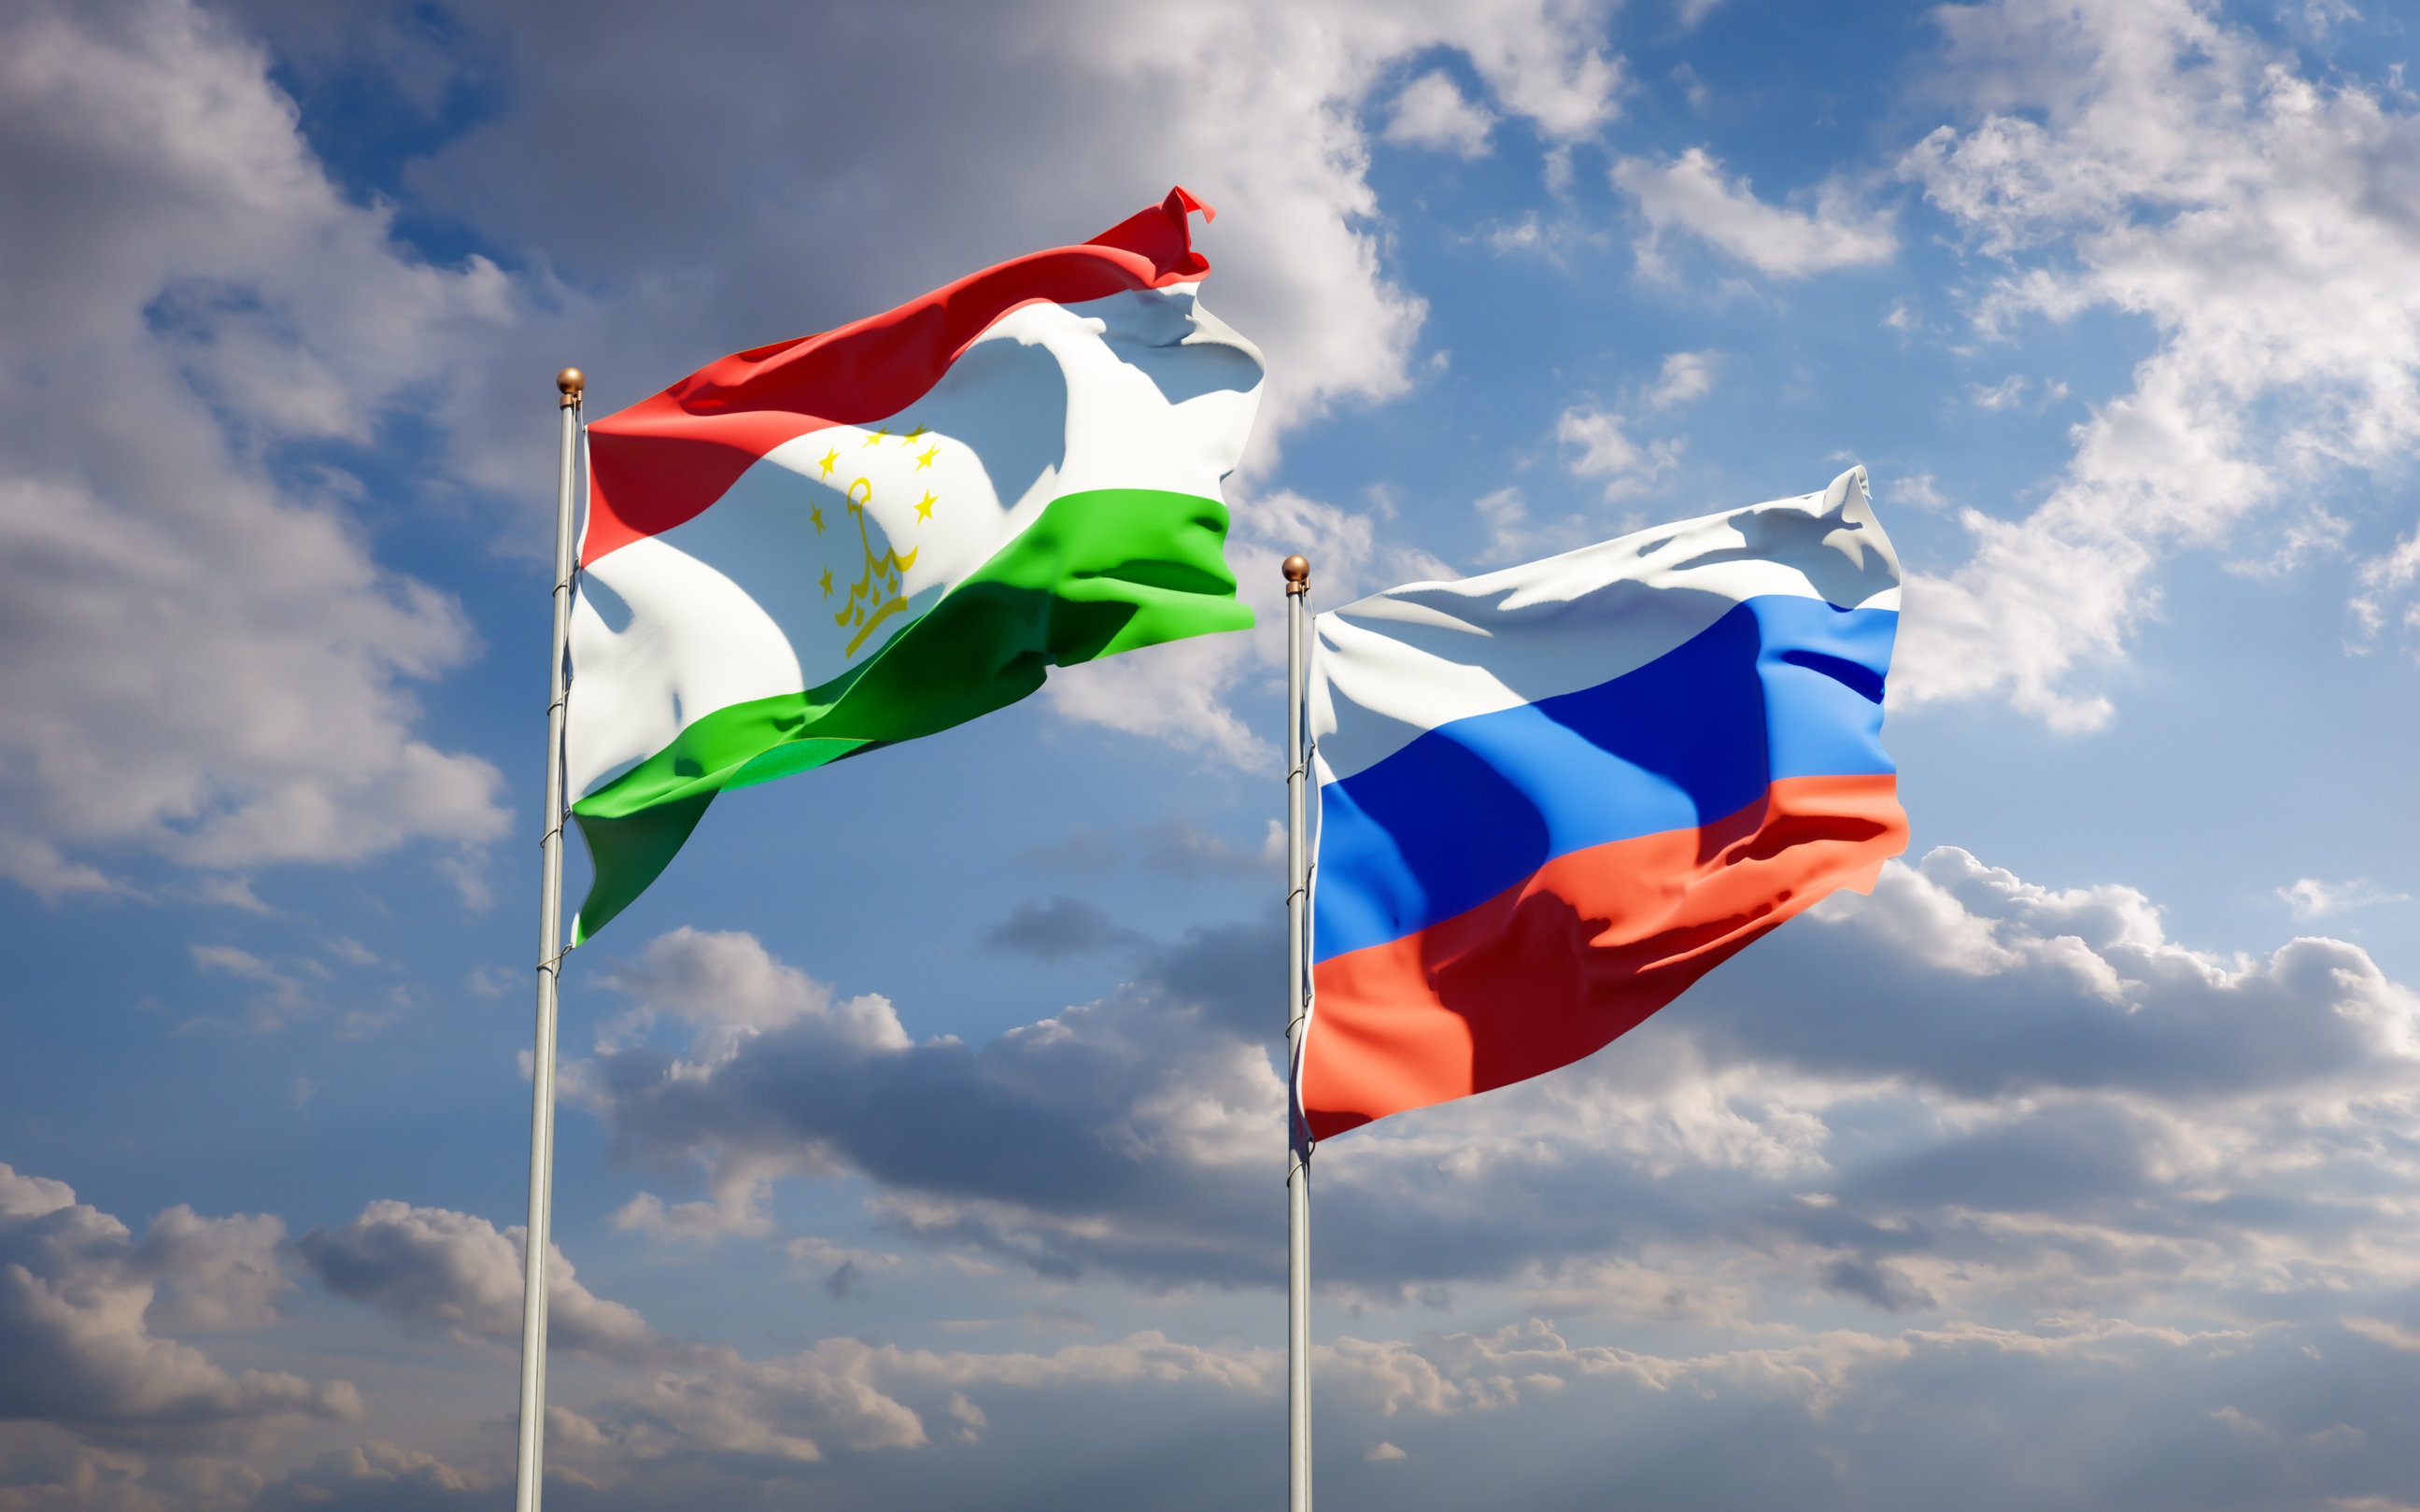 τατζικιστάν: εκλήθη ο ρώσος πρεσβευτής για τη μεταχείριση των τατζίκων μεταναστών από τη μόσχα